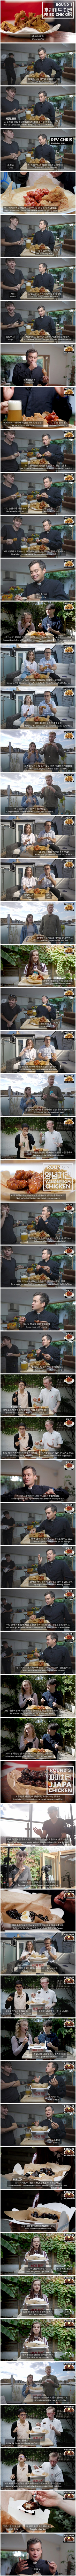 한국 치킨을 처음 먹어본 영국 대학생들의 반응